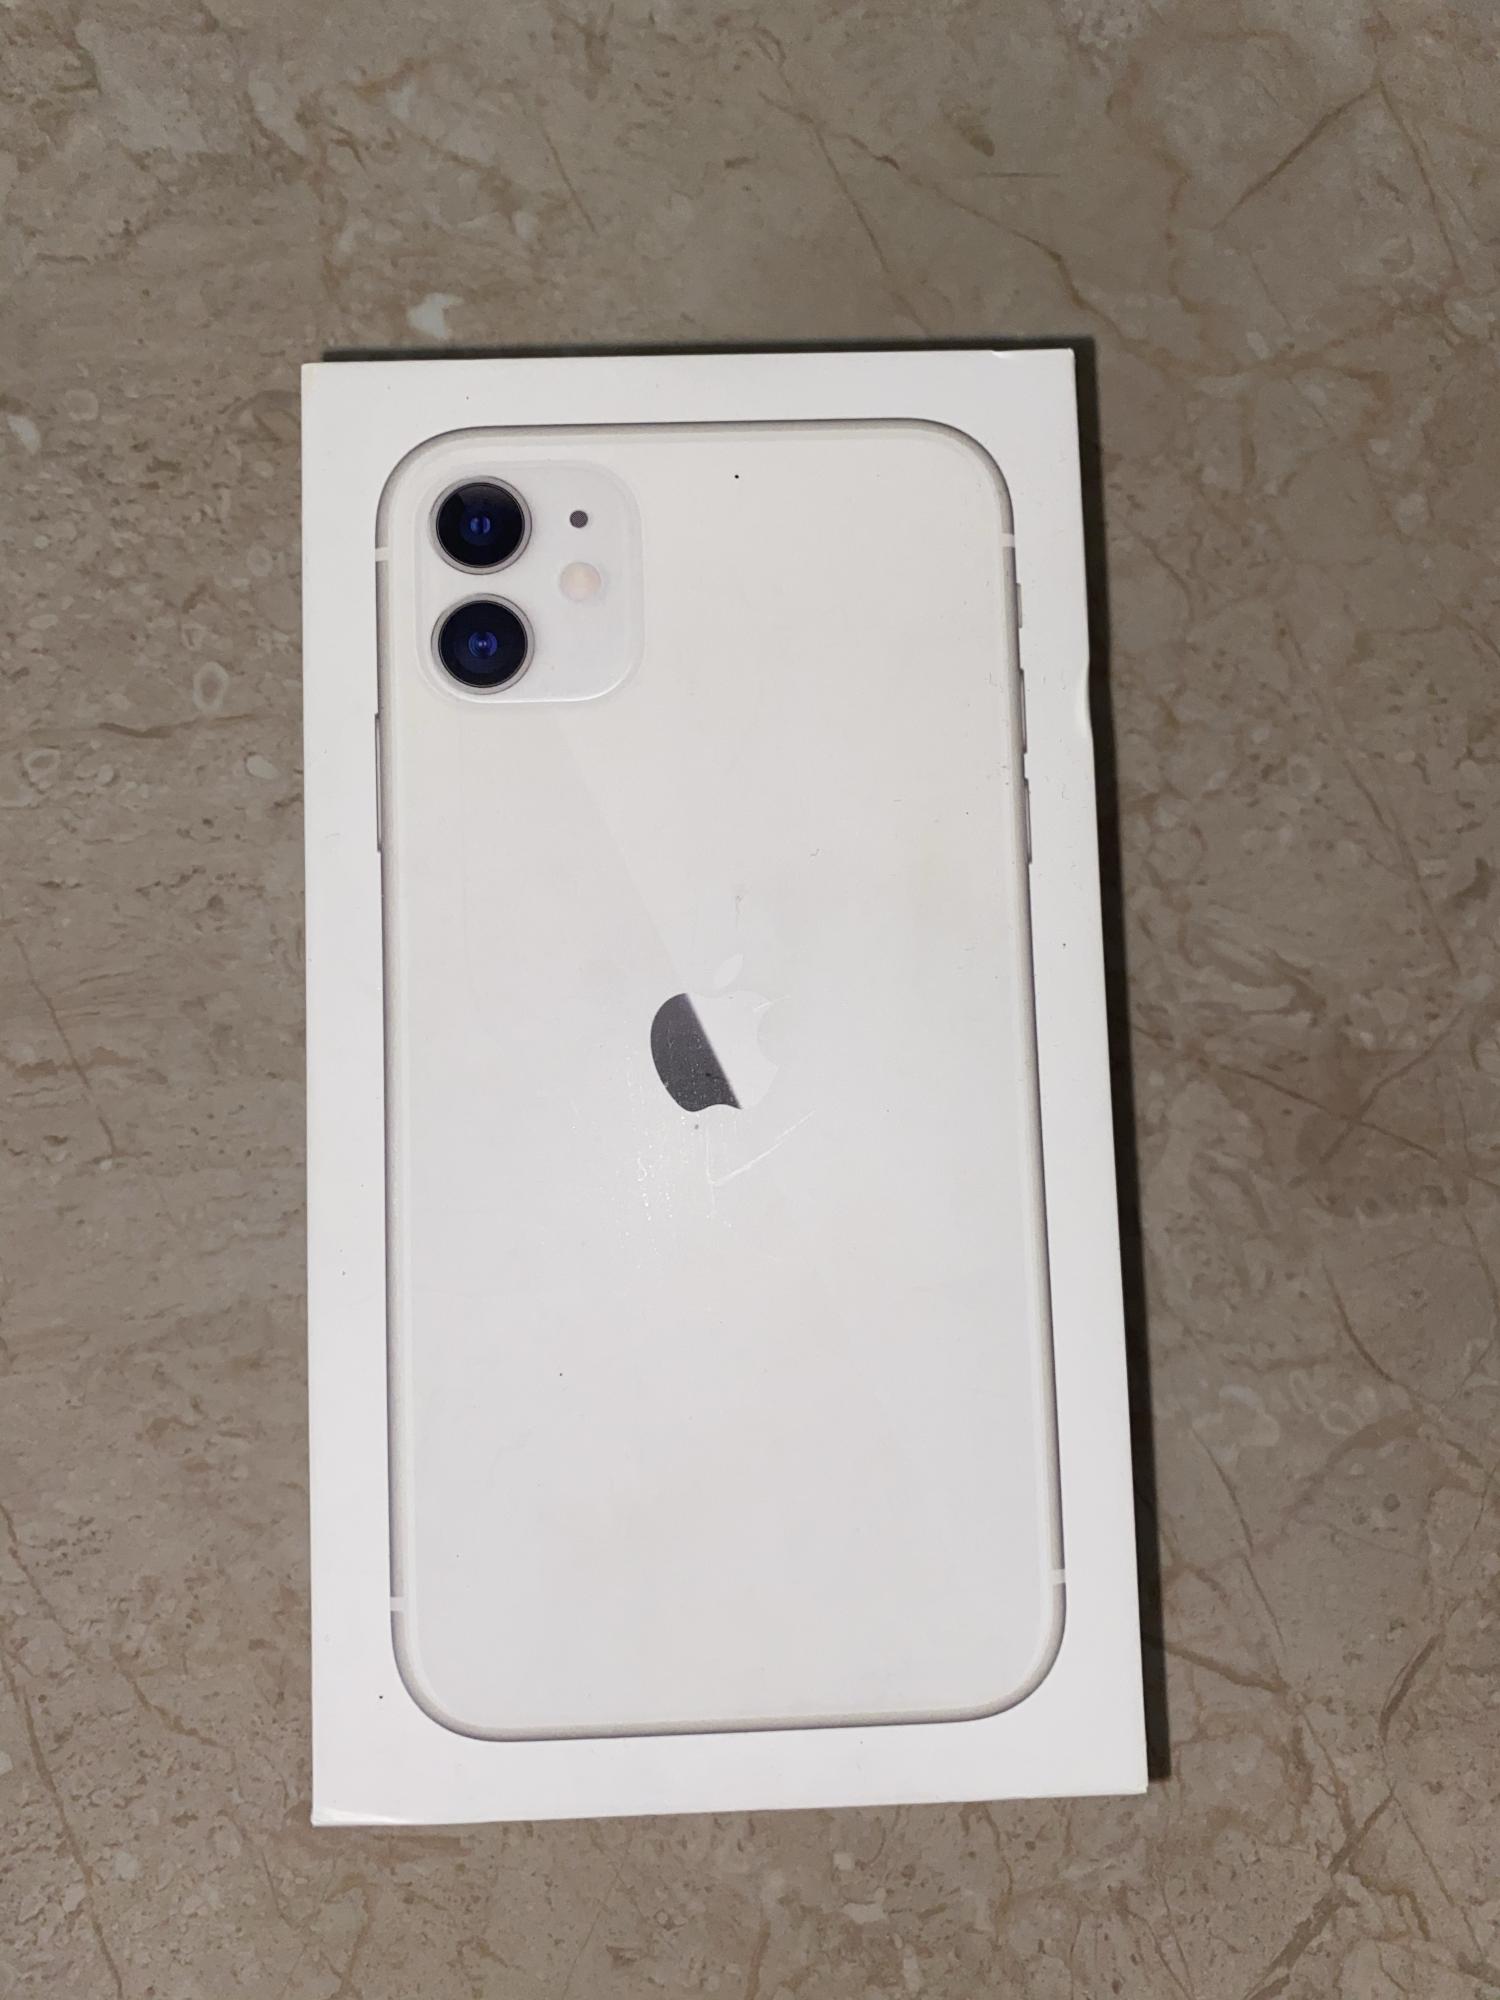 Коробка от айфона 11. Айфон 11 64 ГБ белый. Айфон 11 блы 64 ГБ. Iphone 11 белый коробка. Айфон 11 128 ГБ белый.